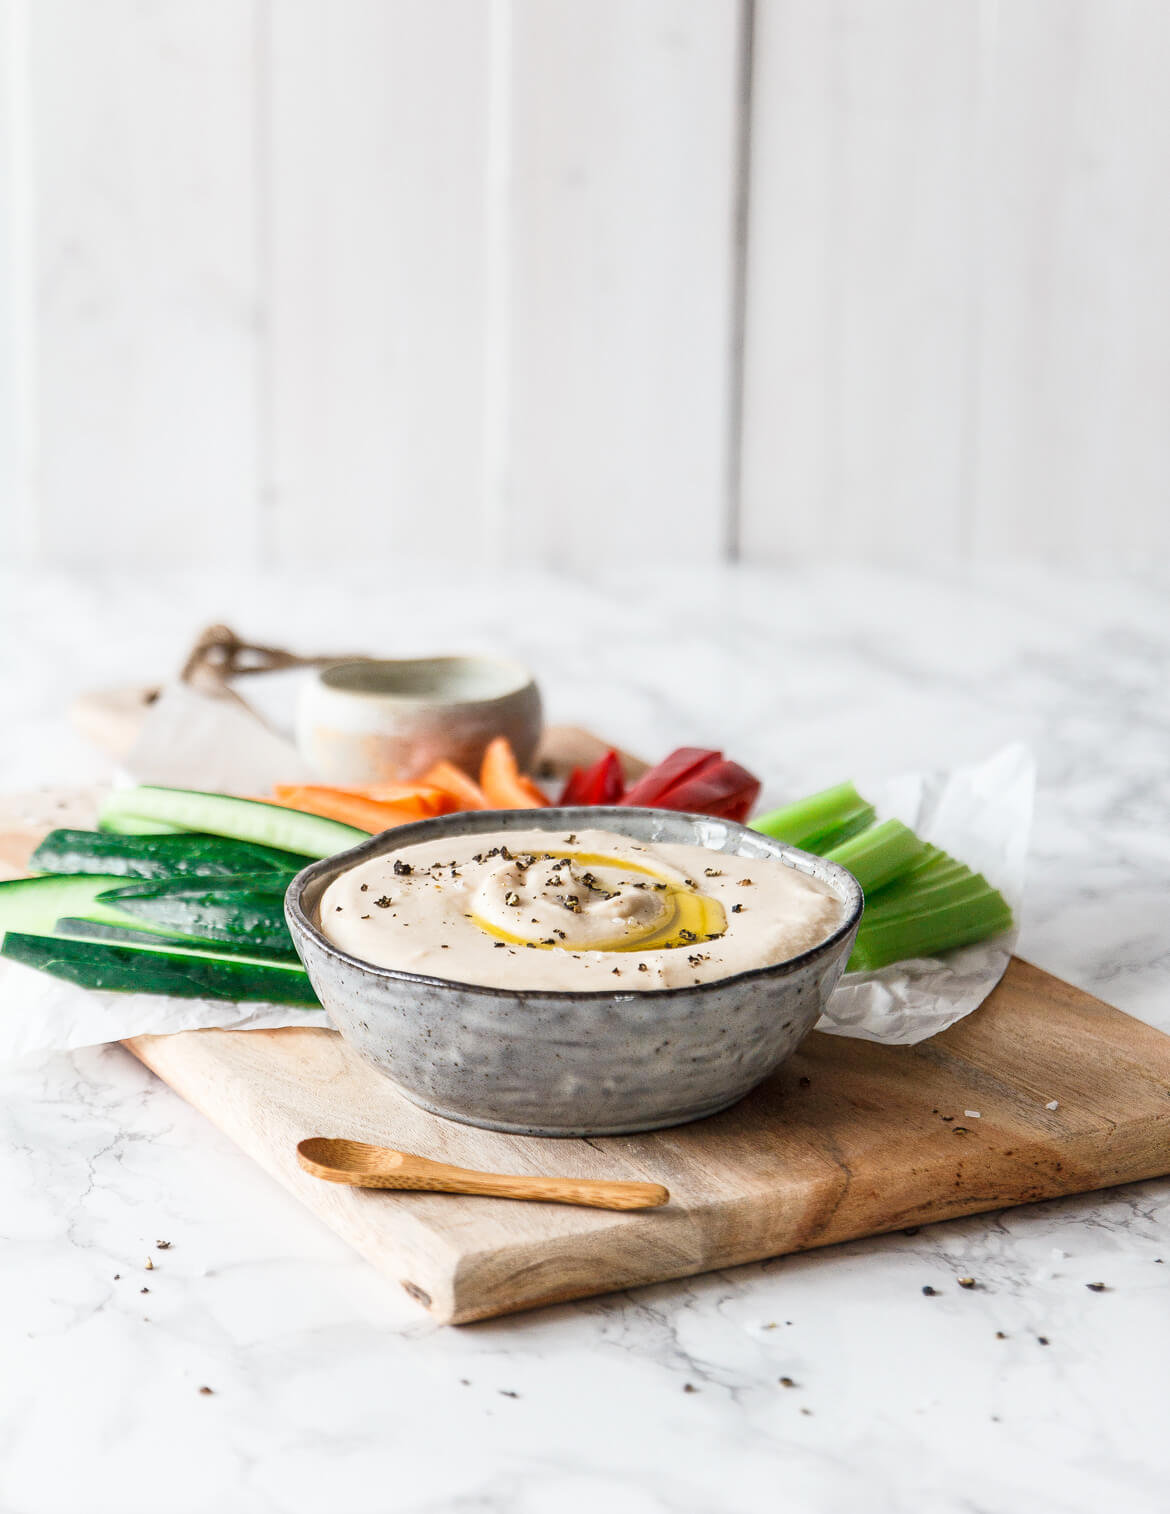 Bohnen-Meerrettich-Hummus mit geröstetem Knoblauch · Eat this! Foodblog ...